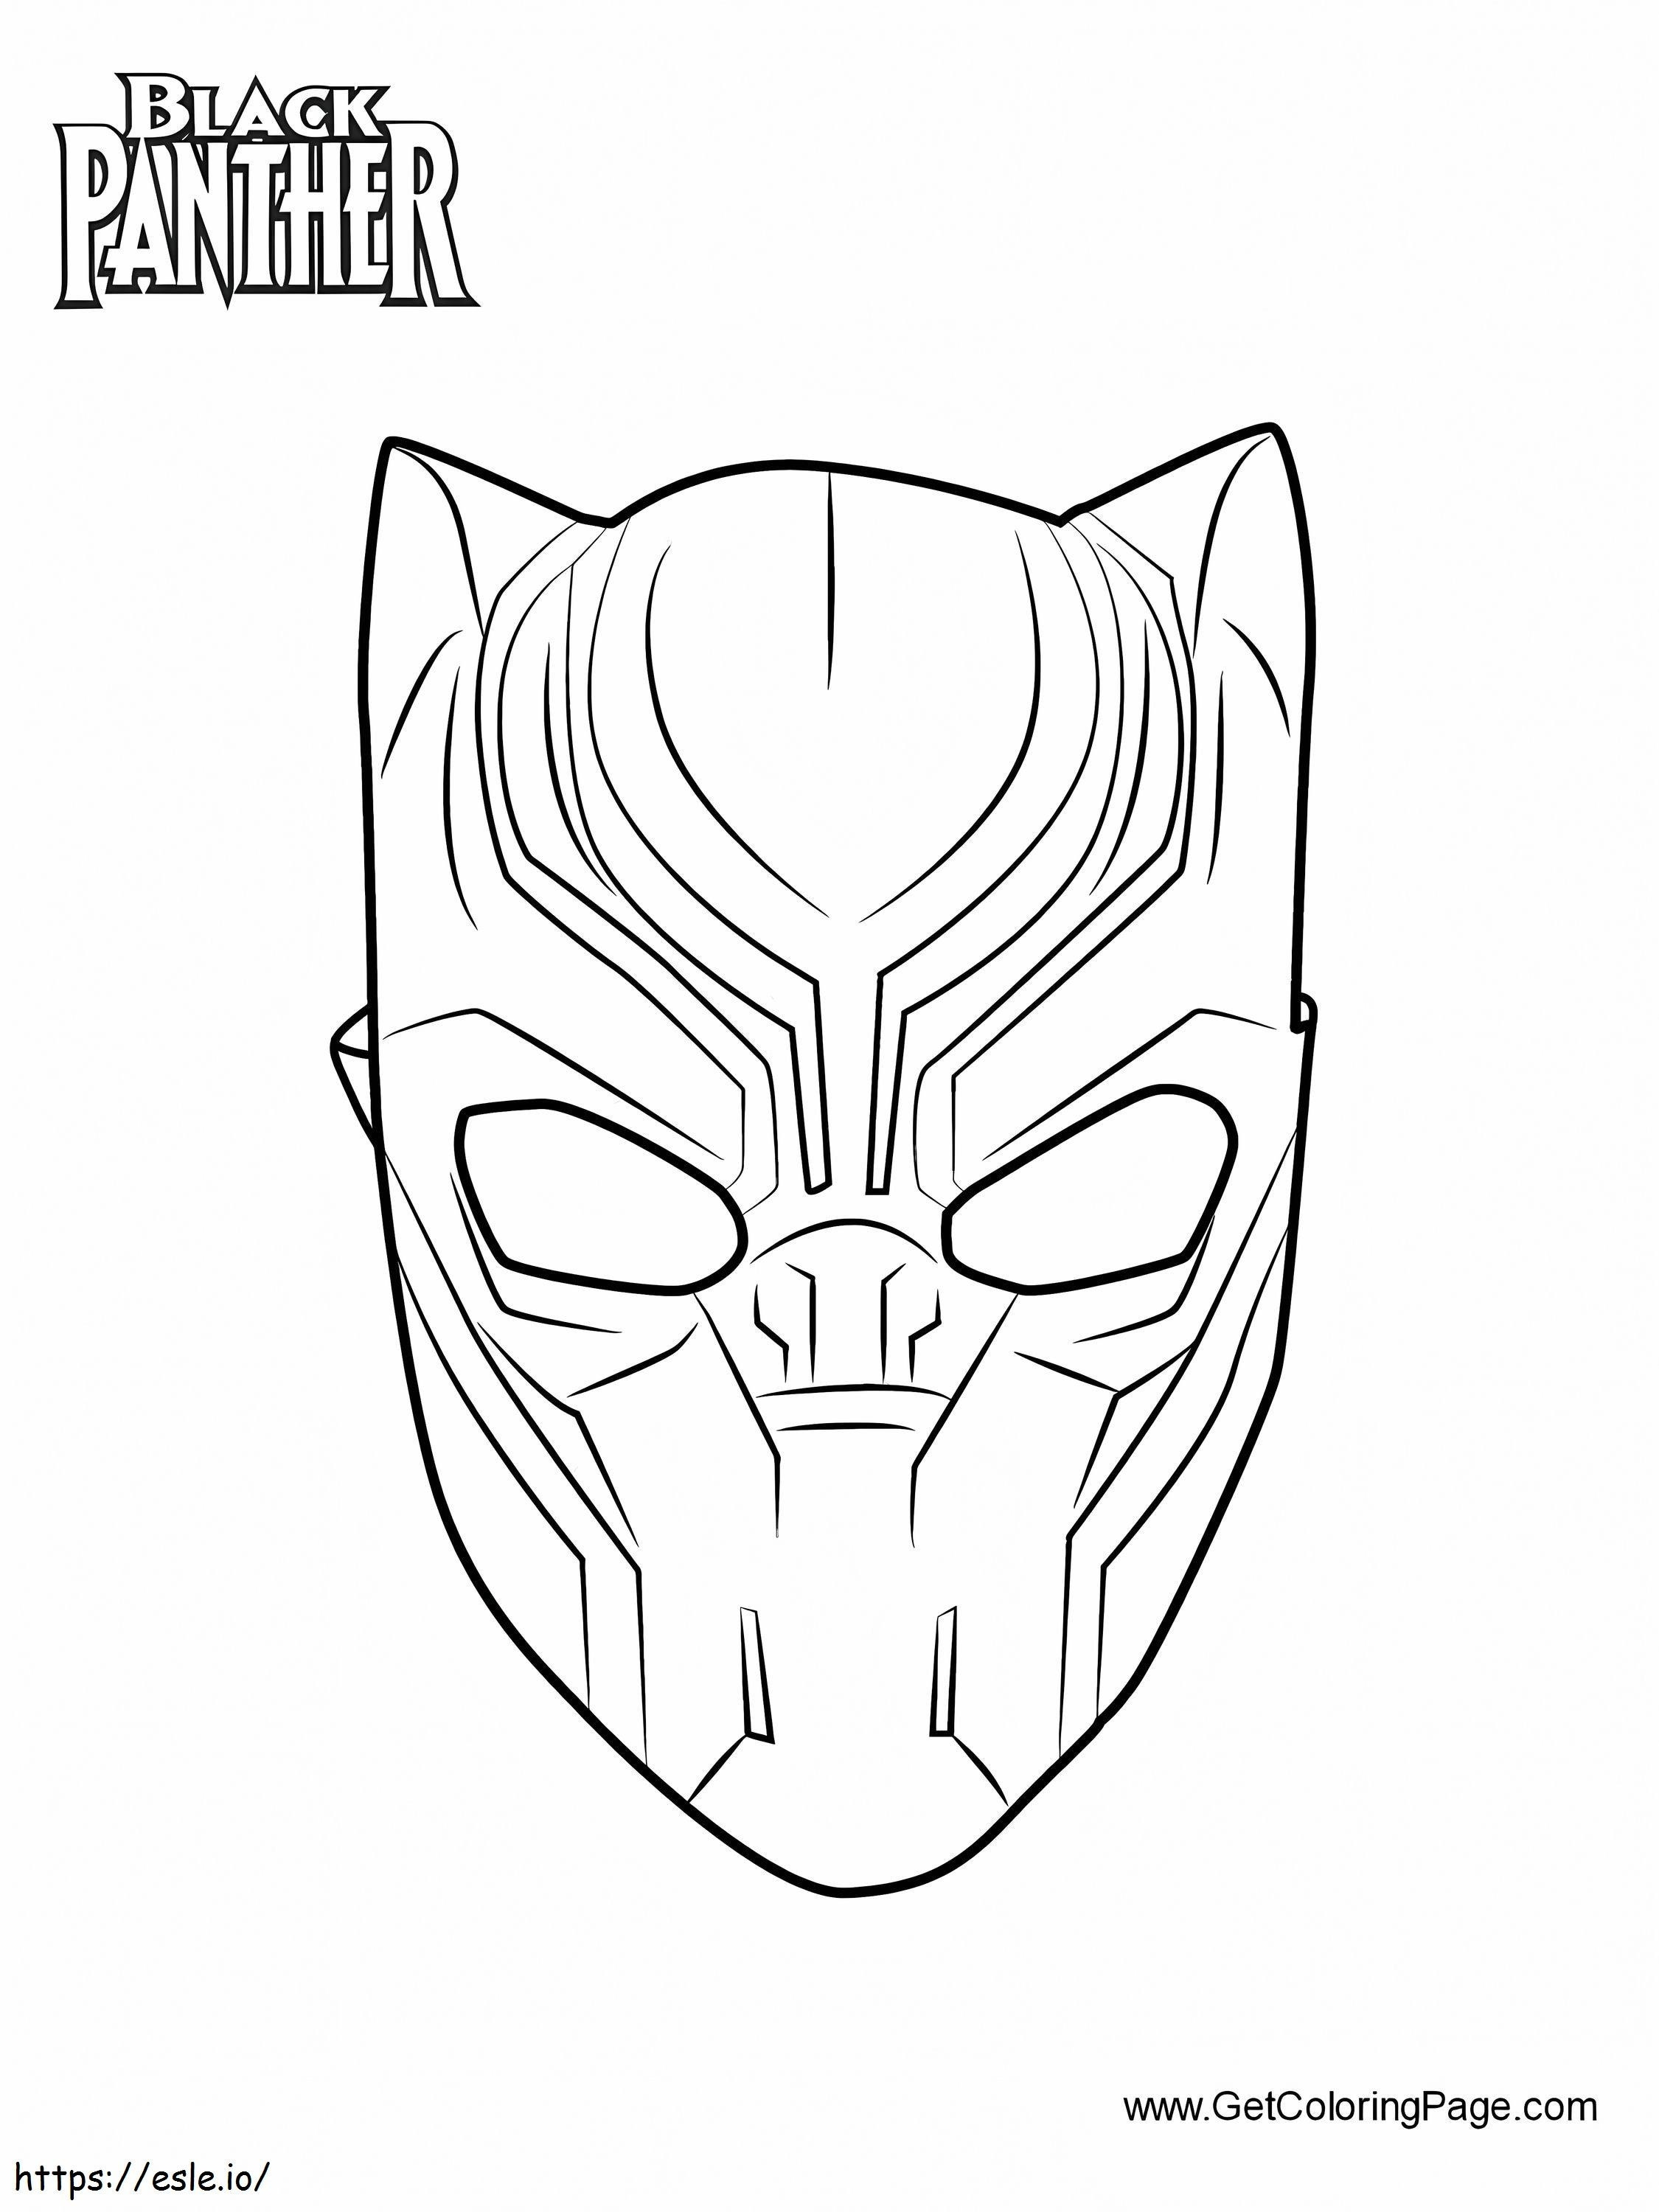 1539414888 Black Panther-Maske zum Ausdrucken ausmalbilder